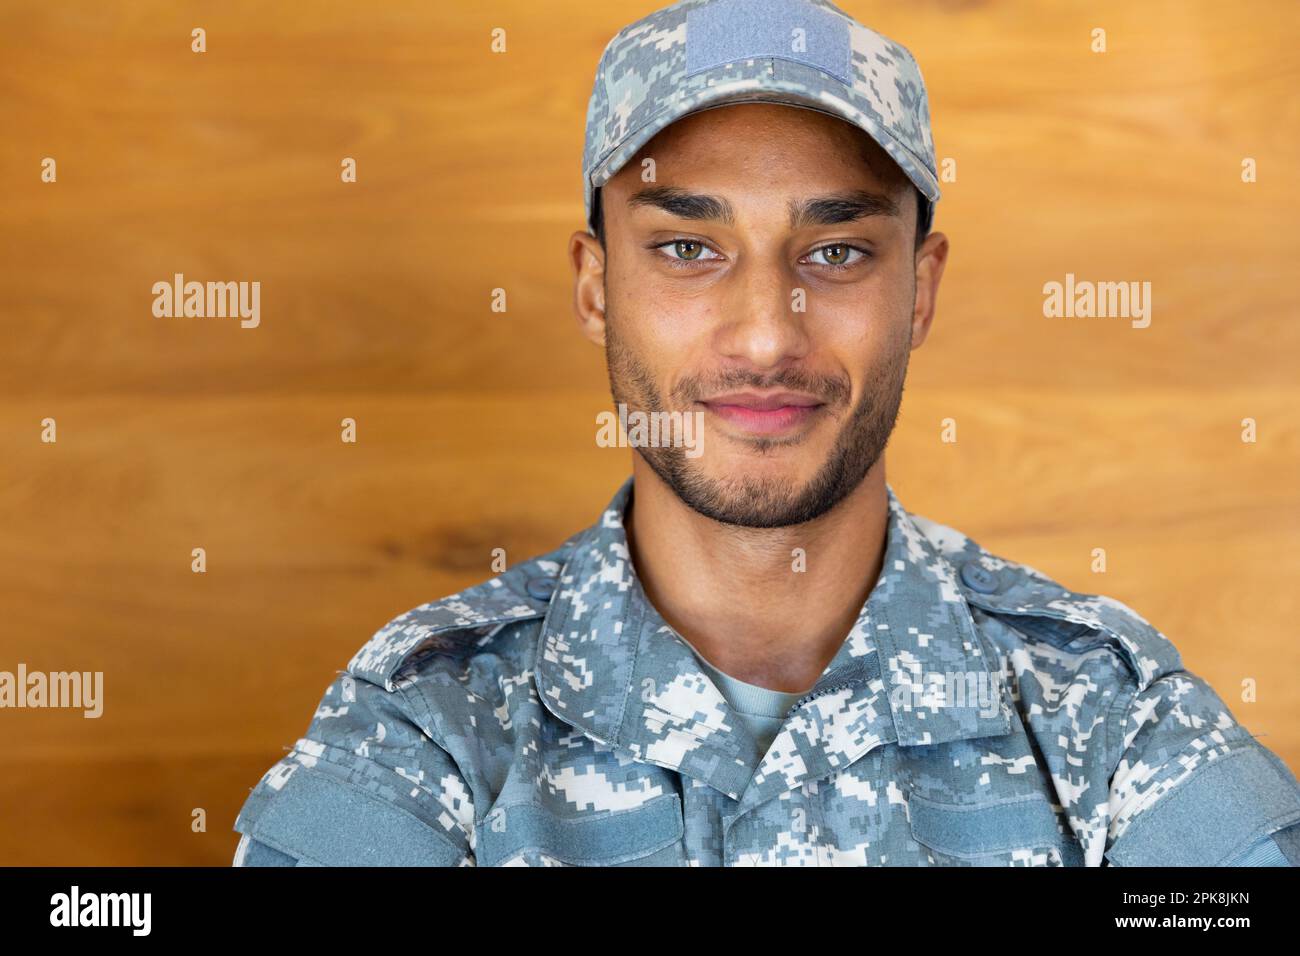 Portrait d'un homme biracial heureux, portant un uniforme militaire et une casquette, regardant l'appareil photo. Style de vie, service militaire et temps libre, sans modification. Banque D'Images